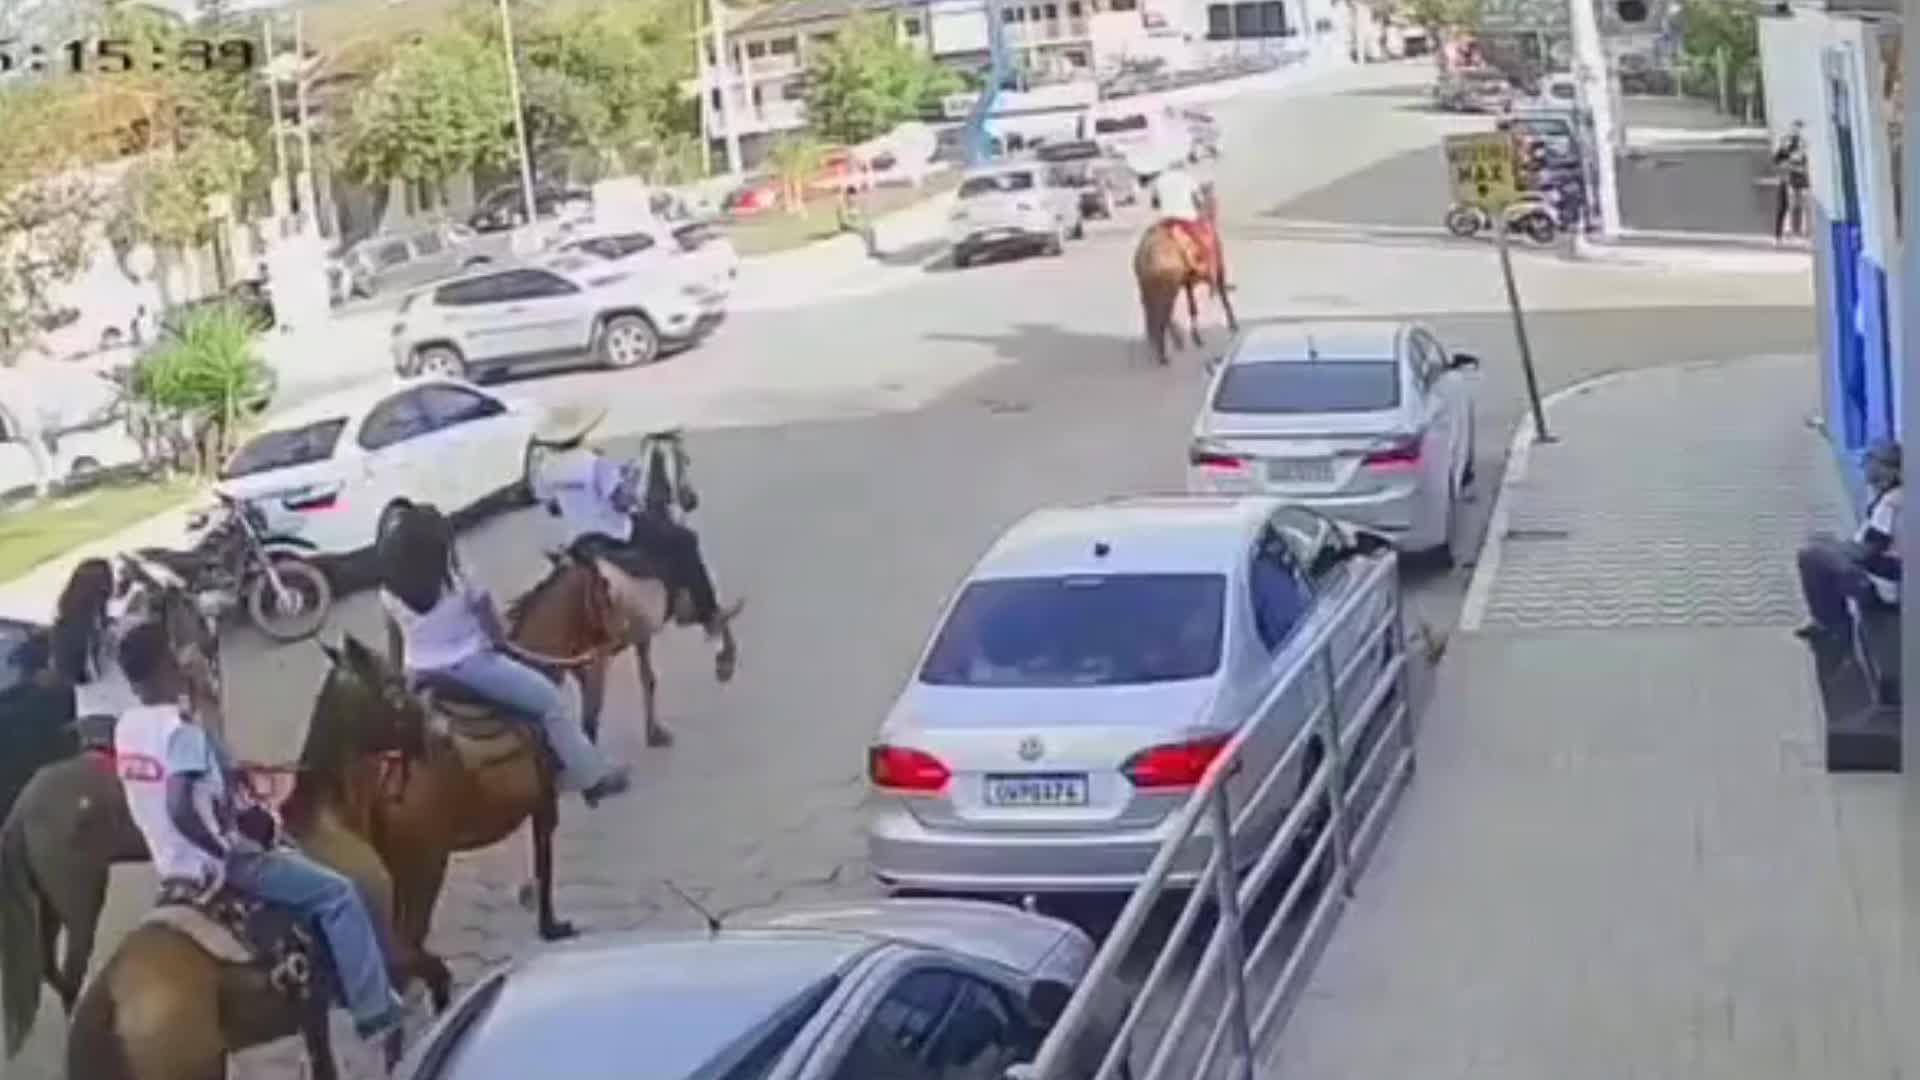 VÍDEO: homem é flagrado dando cerveja a cavalo no interior de MG, Centro-Oeste